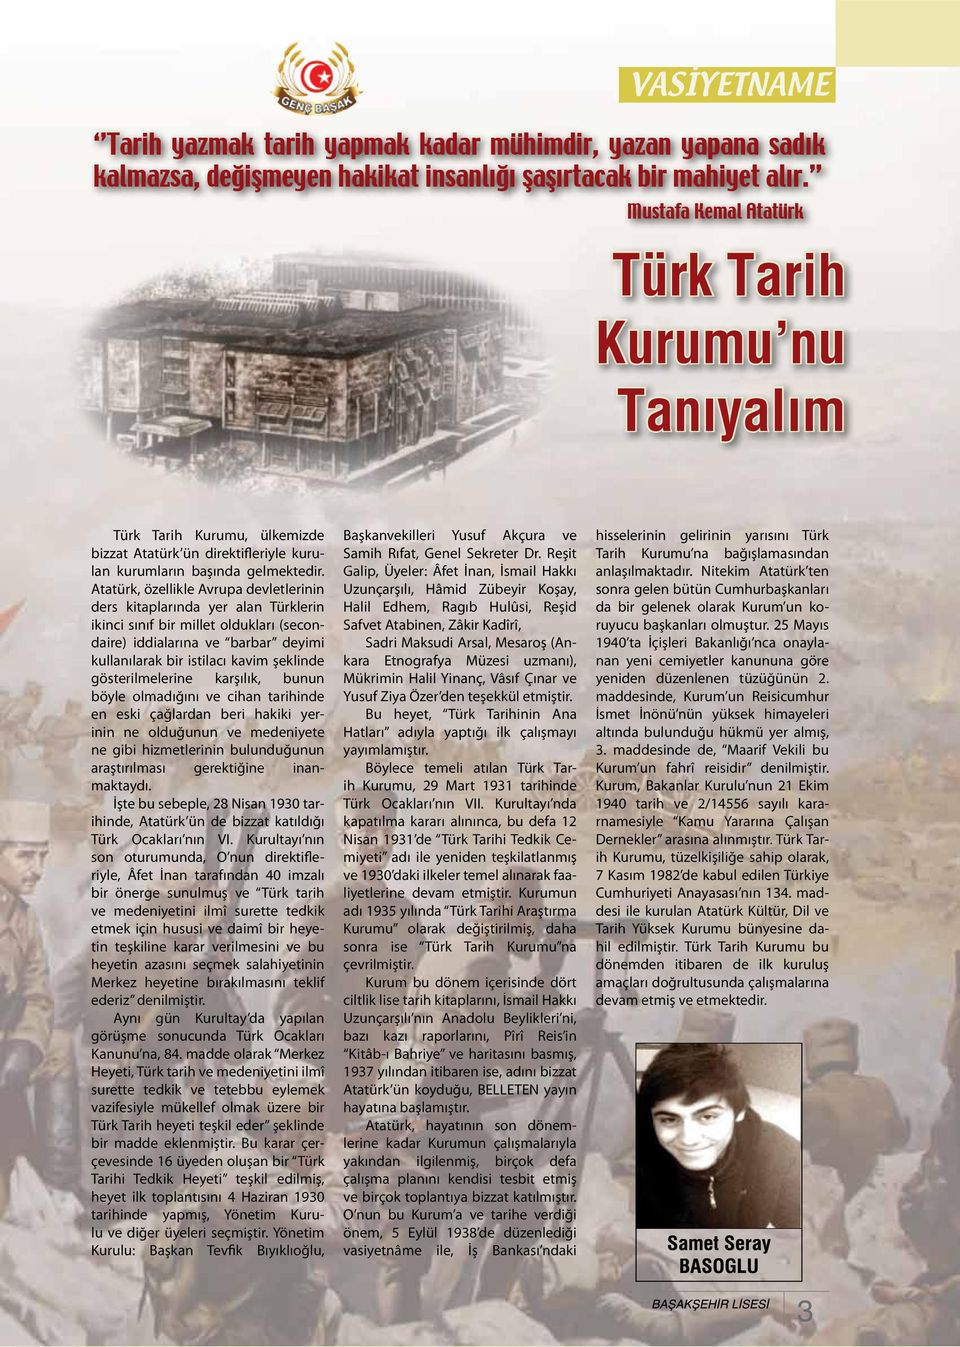 Atatürk, özellikle Avrupa devletlerinin ders kitaplarında yer alan Türklerin ikinci sınıf bir millet oldukları (secondaire) iddialarına ve barbar deyimi kullanılarak bir istilacı kavim şeklinde